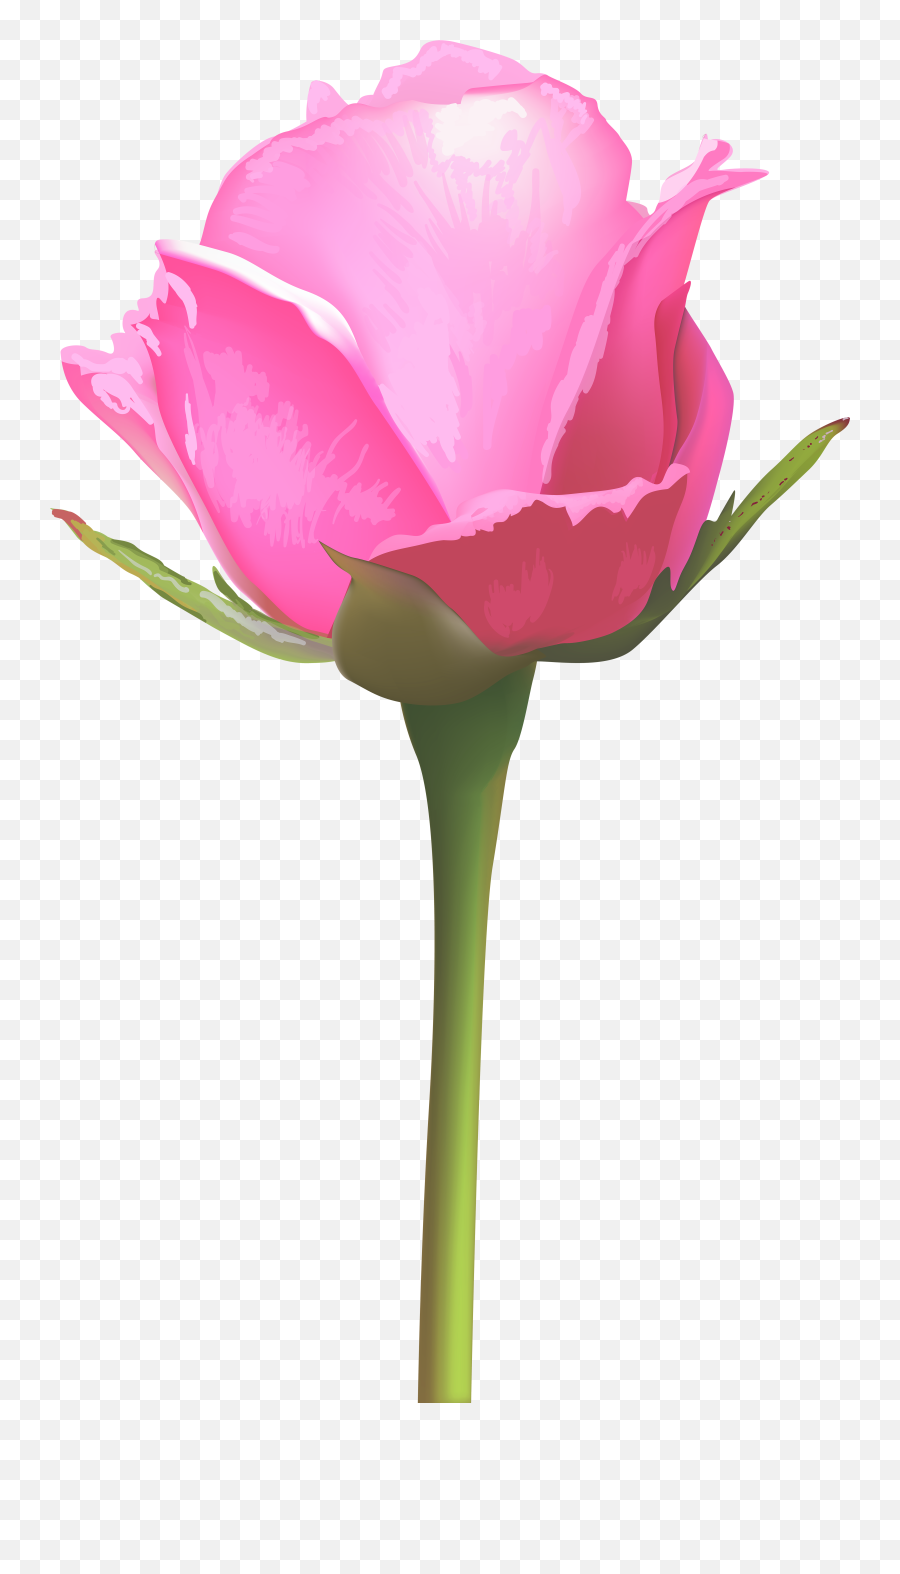 Free Png Download Single Pink Rose Png Images Background - Pink Single Rose Flower Png Emoji,Pink Flower Png